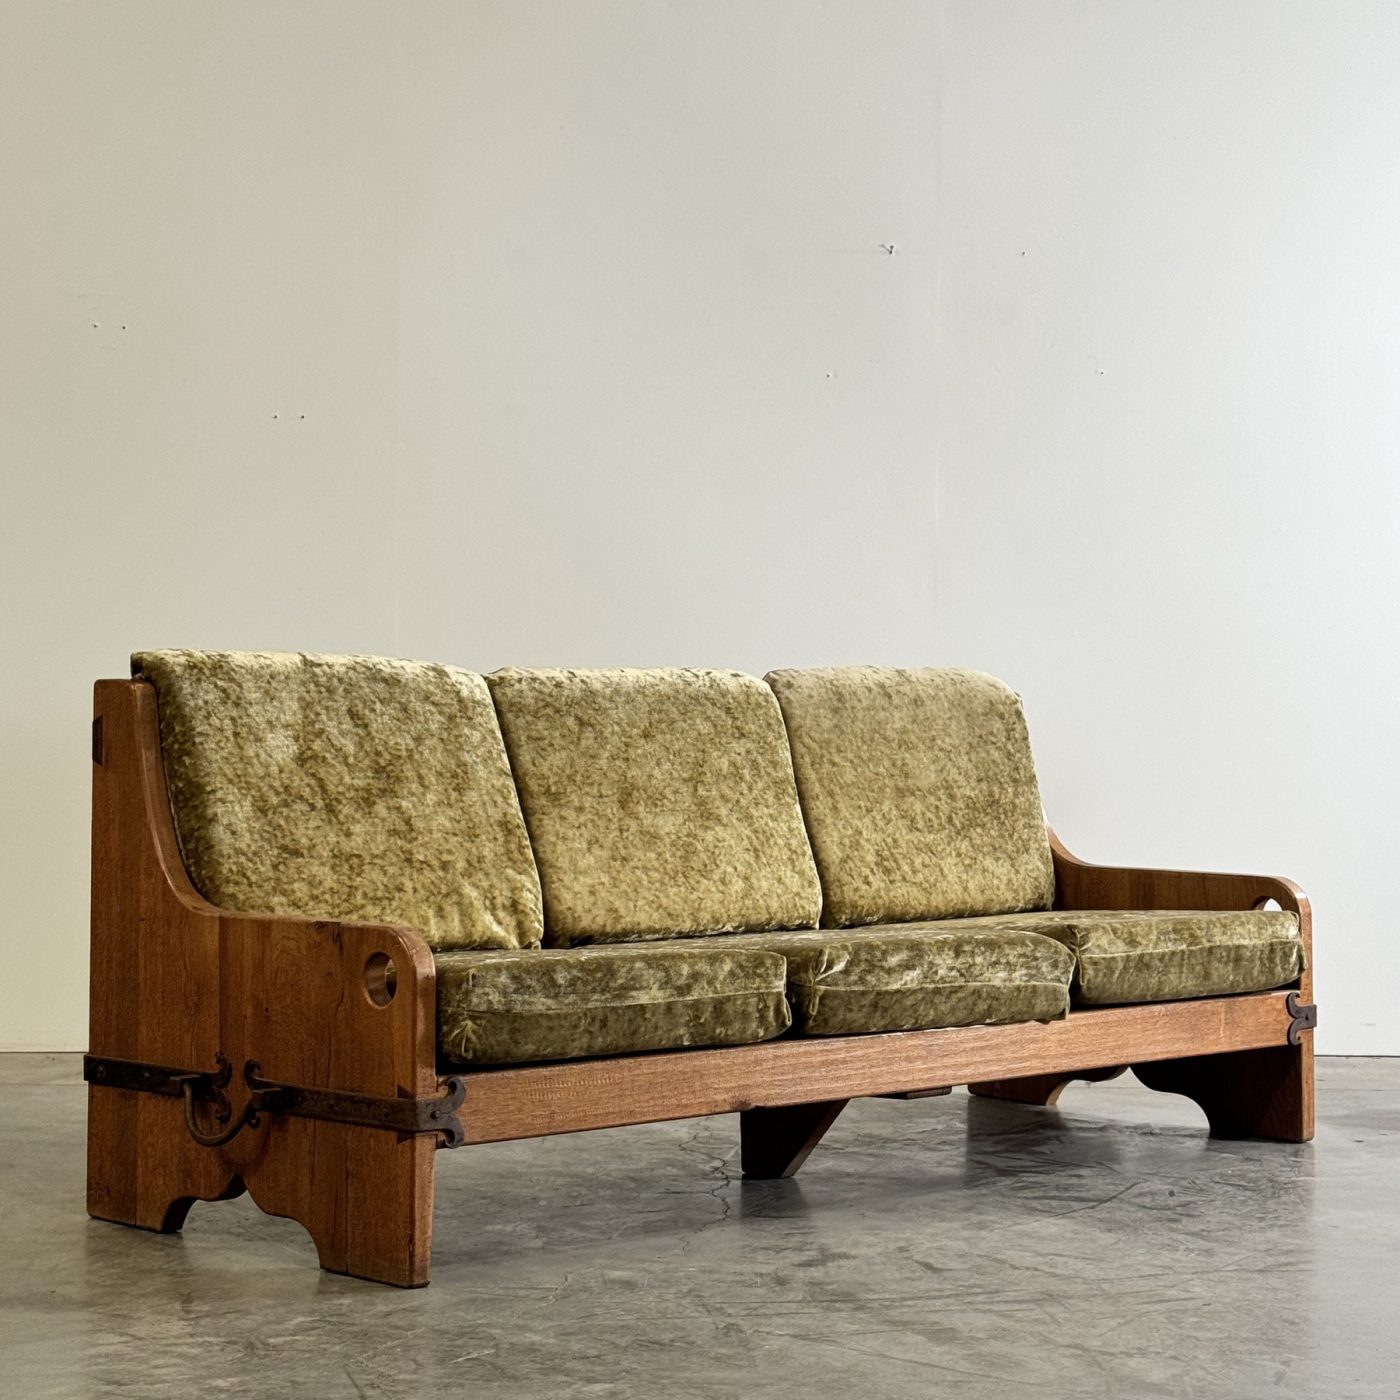 objet-vagabond-oak-sofa0000